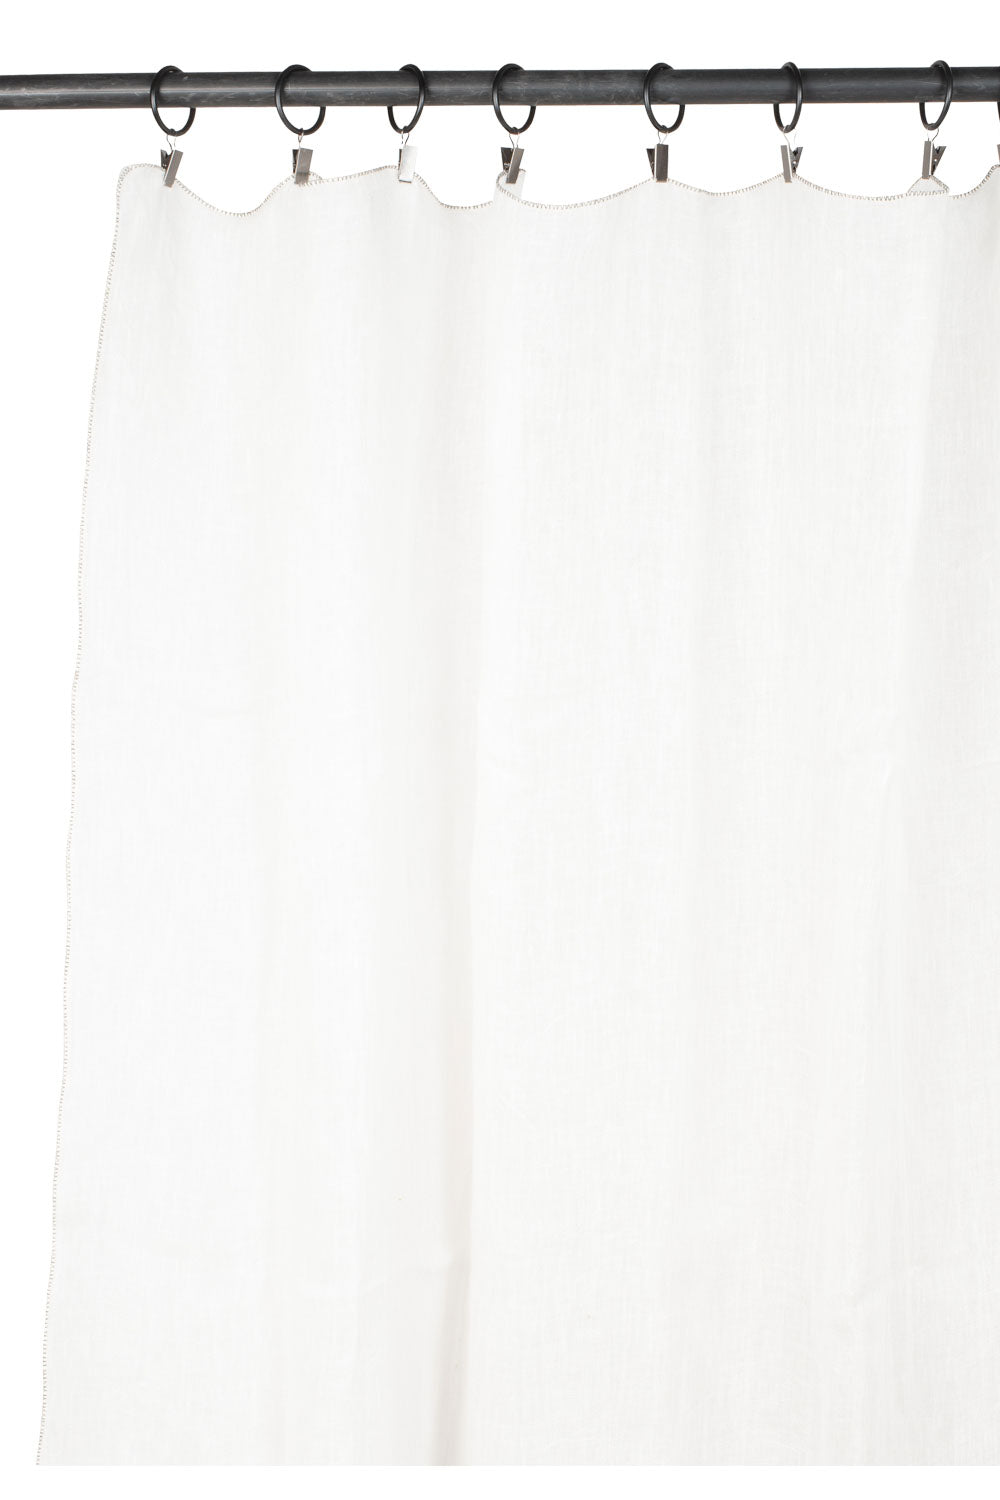 rideau en voile de lin florence 140x300 cm blanc-harmony haomy